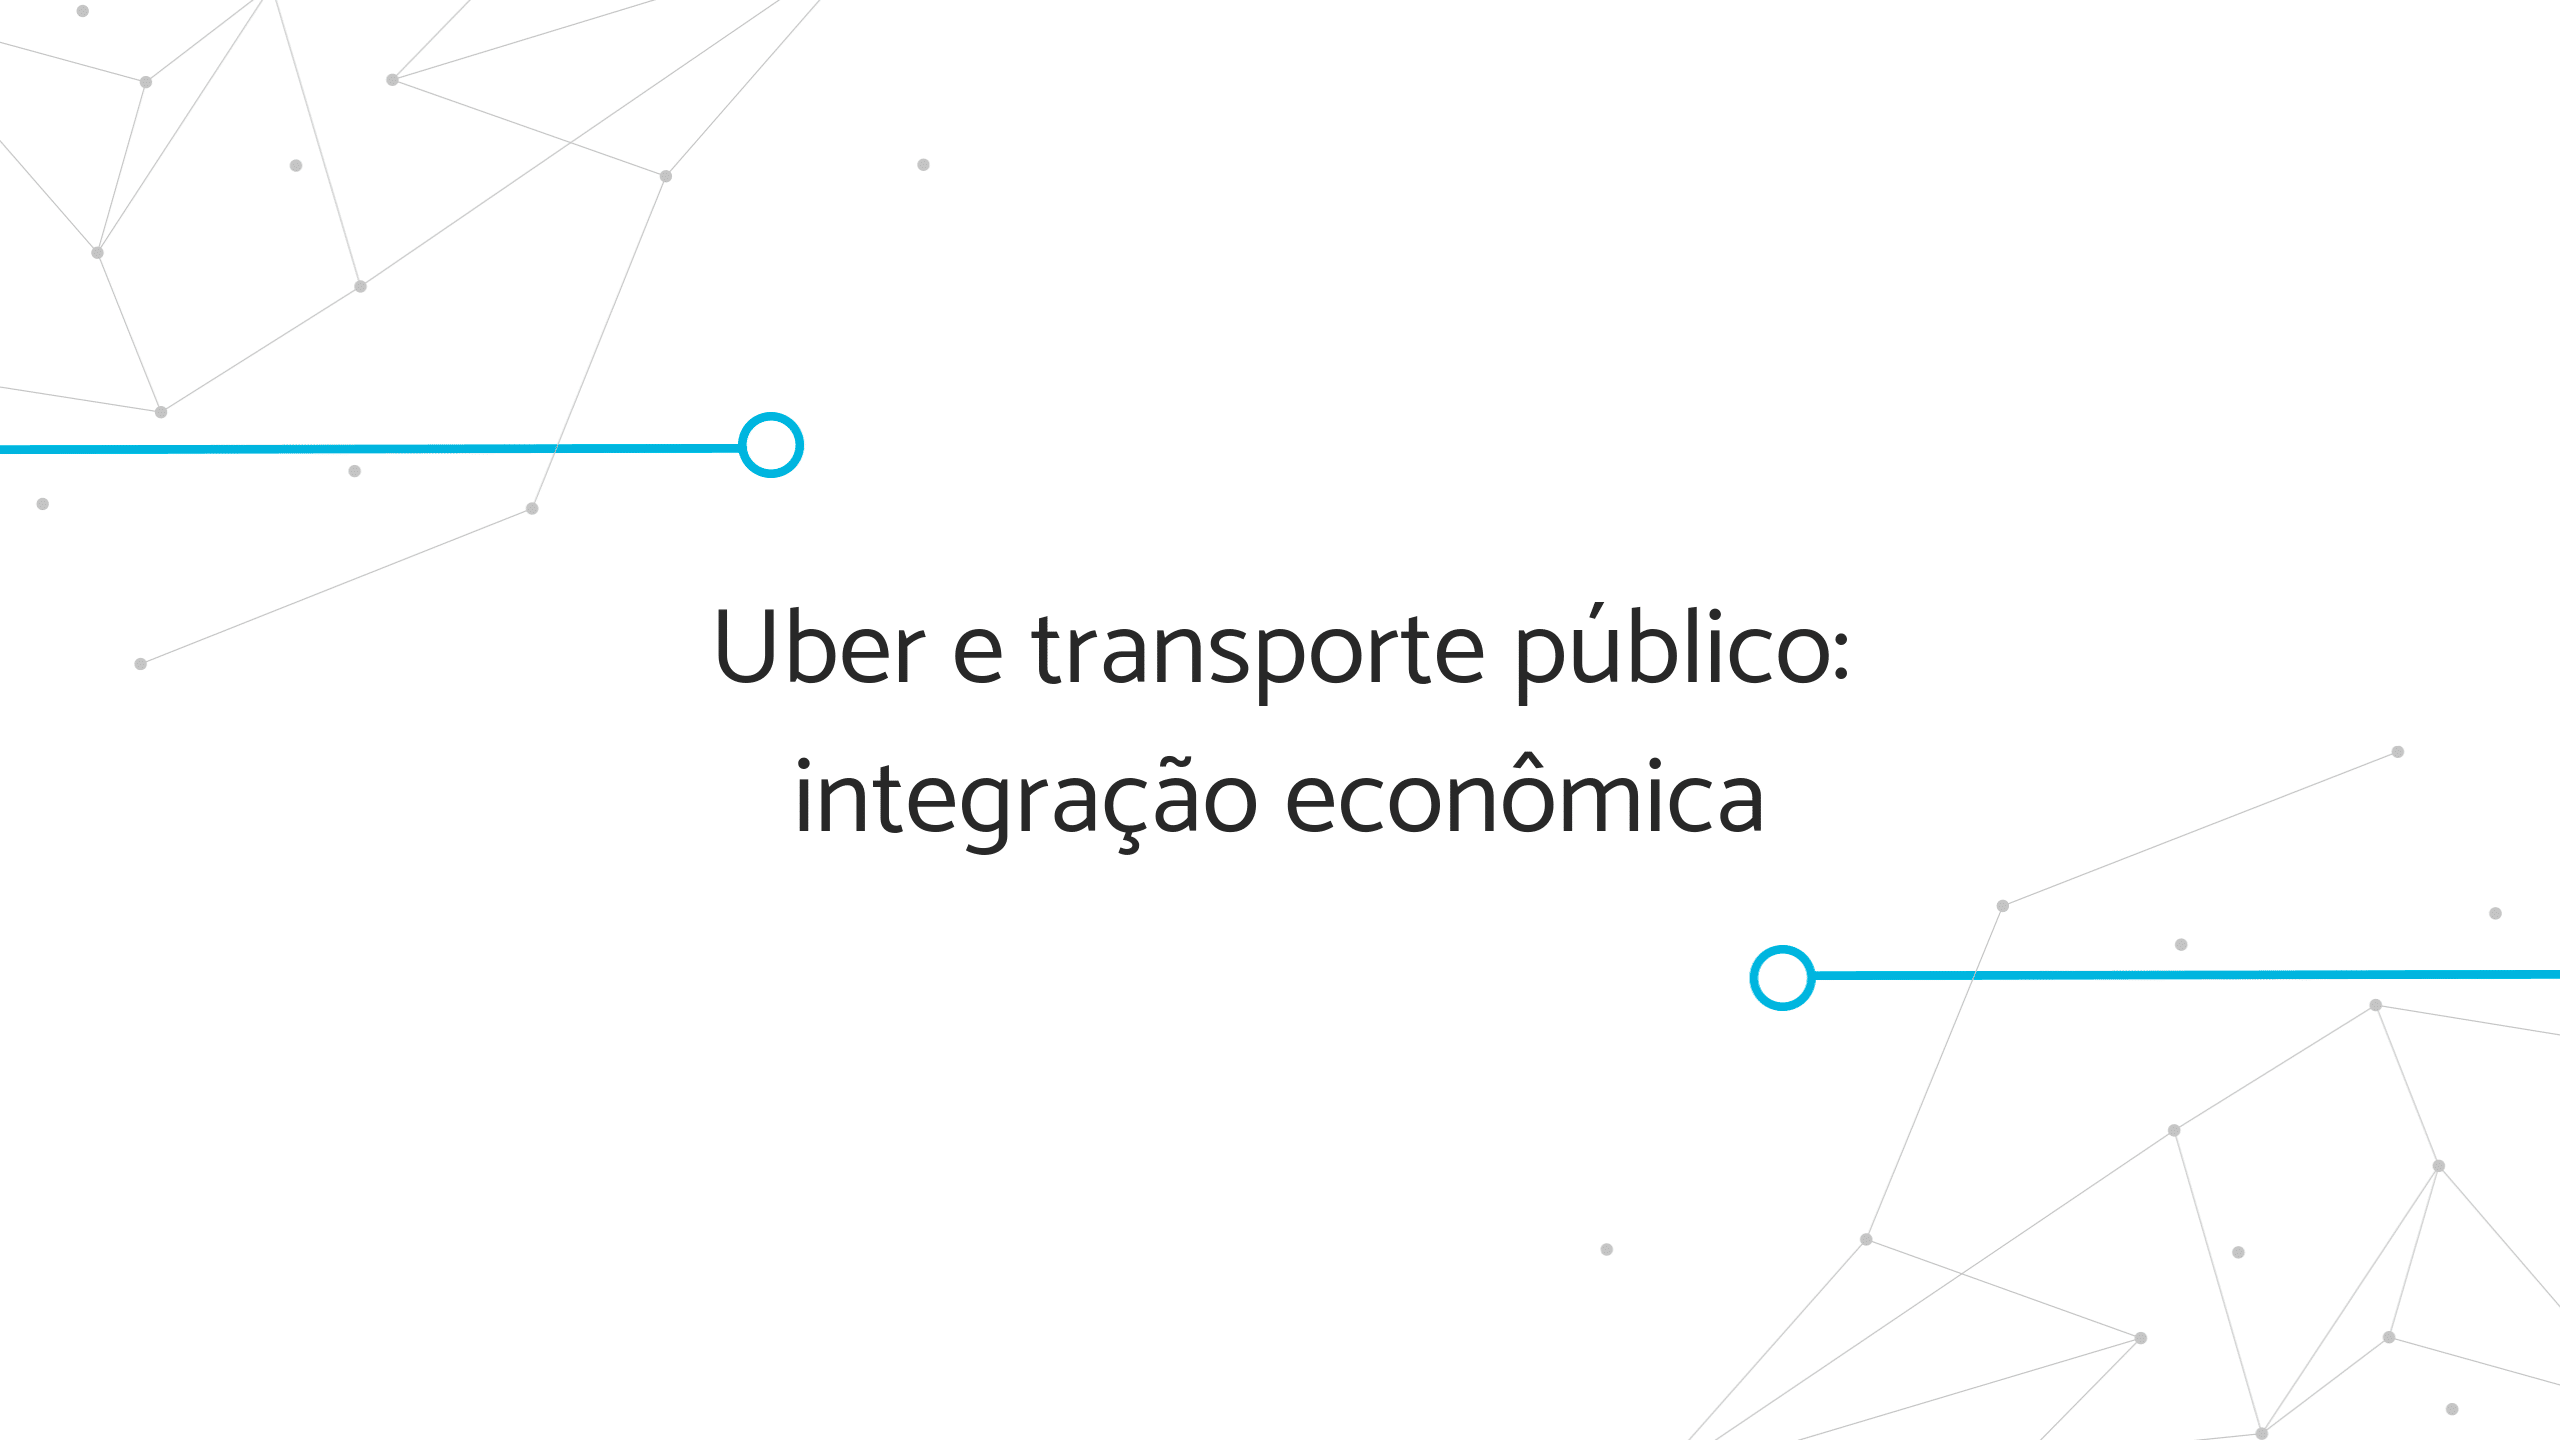 Banner "Uber e transporte público: integração econômica"